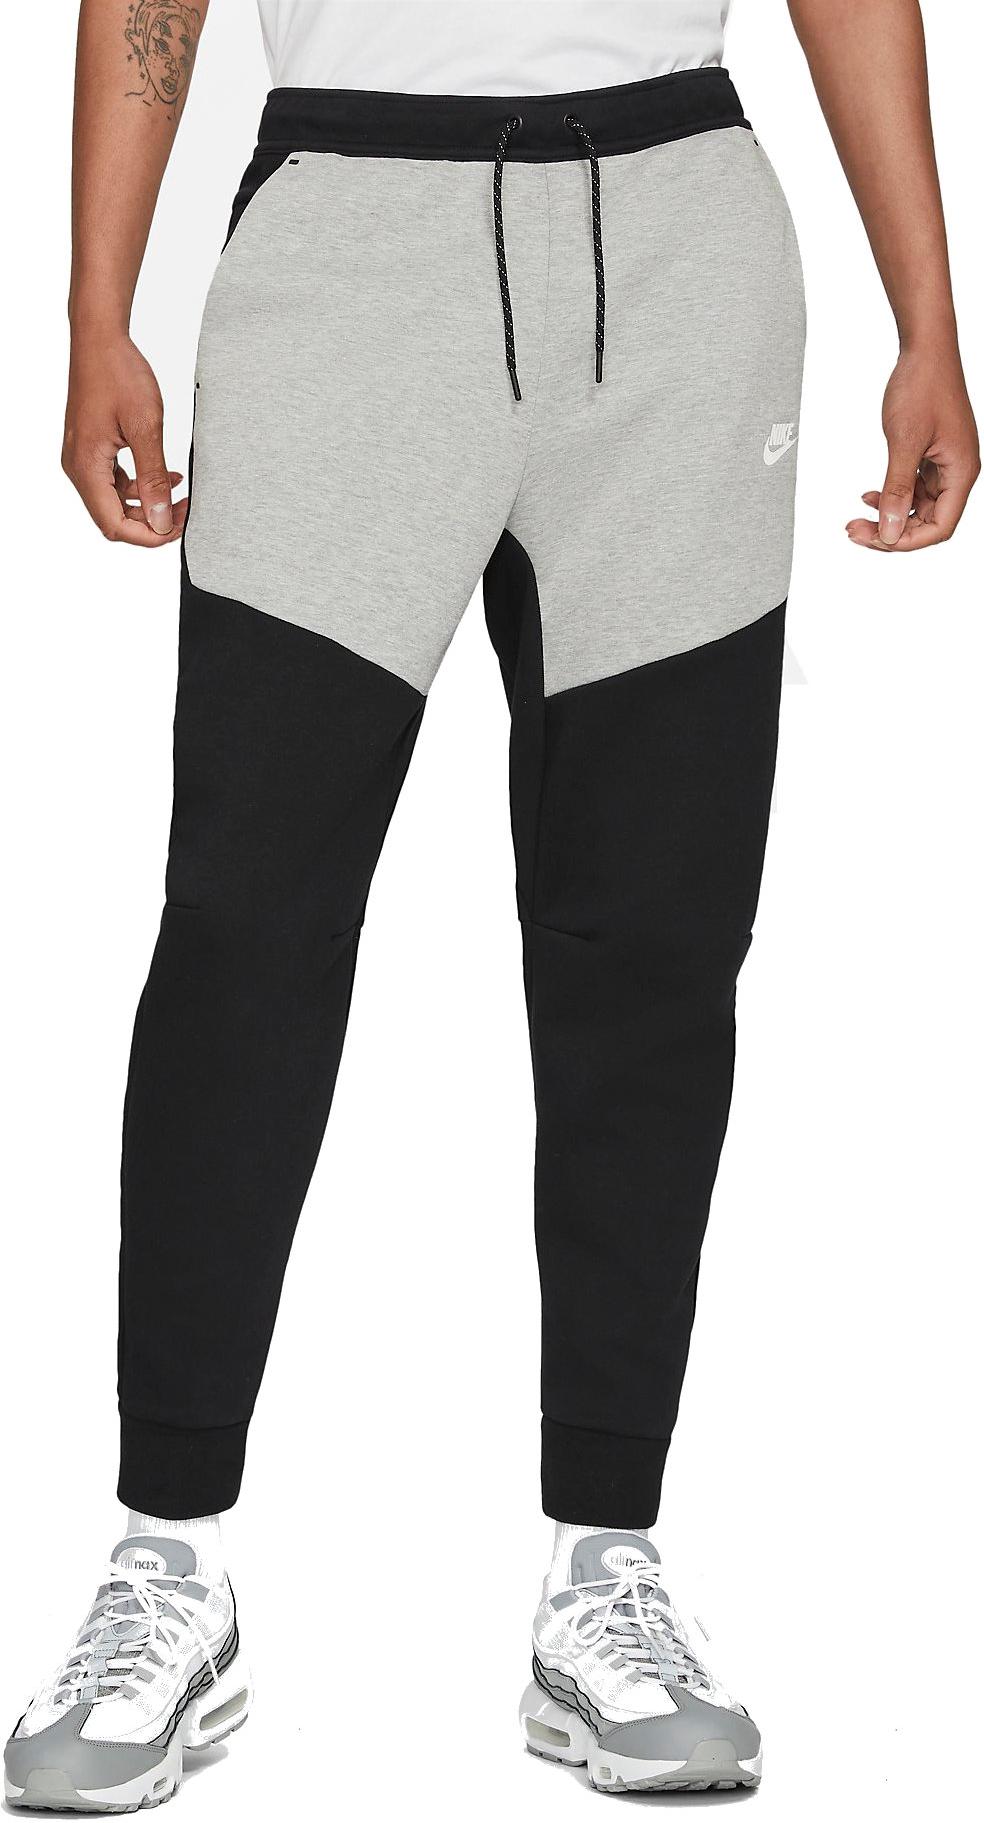 Del Norte gusto tristeza Pantalón Nike Sportswear Tech Fleece Men s Joggers - Top4Fitness.es